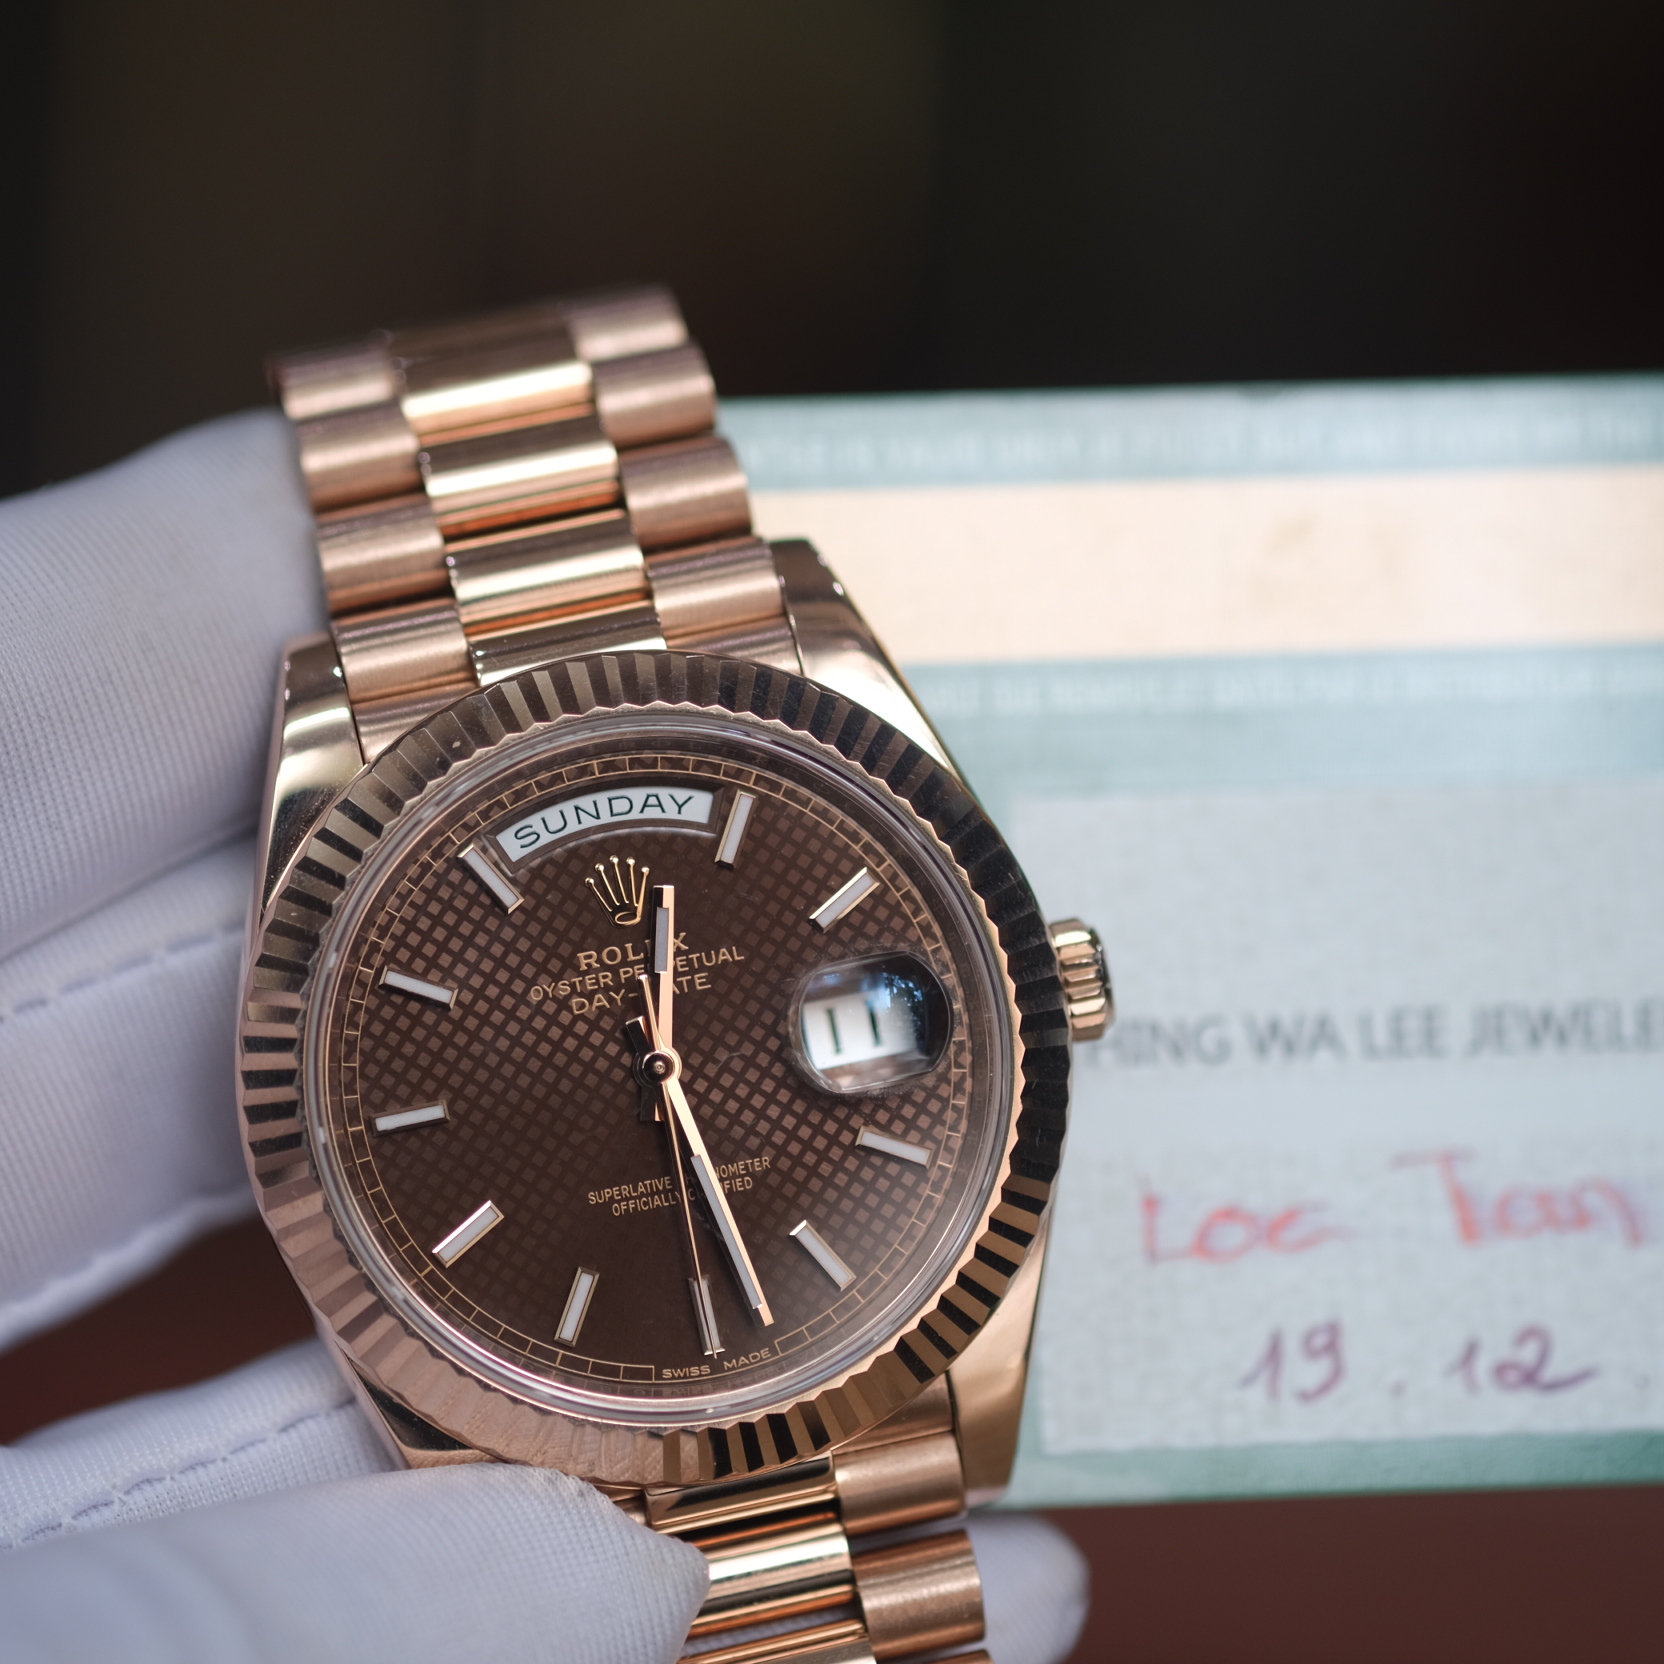 Đồng hồ Rolex Day Date 228235 vàng khối 18k mặt karo nâu chocolate size 40mm